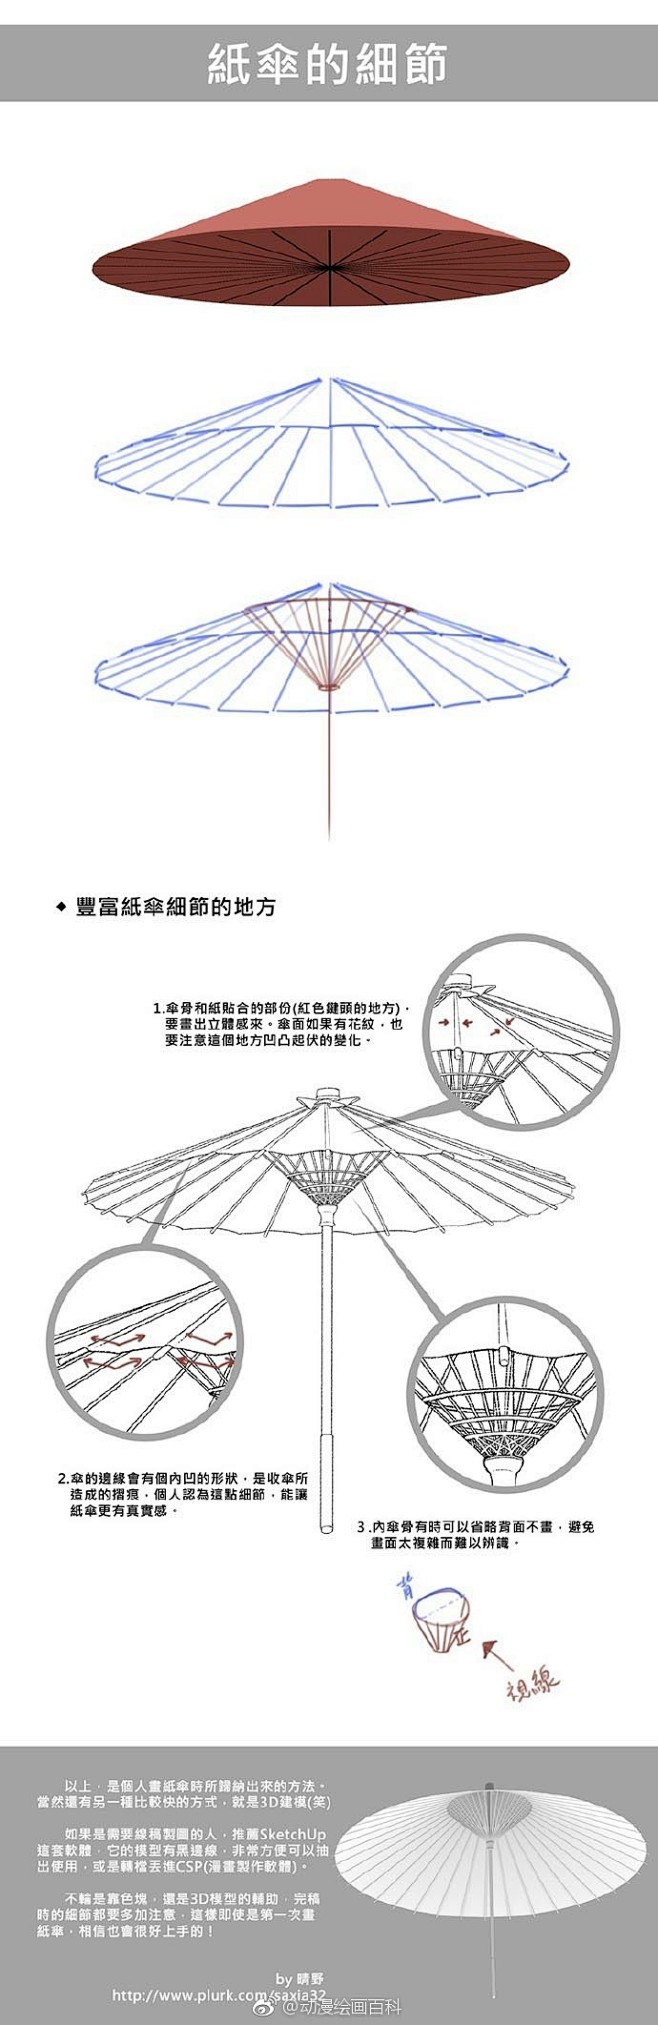 不同角度的伞的参考素材与纸伞的画法
#绘...